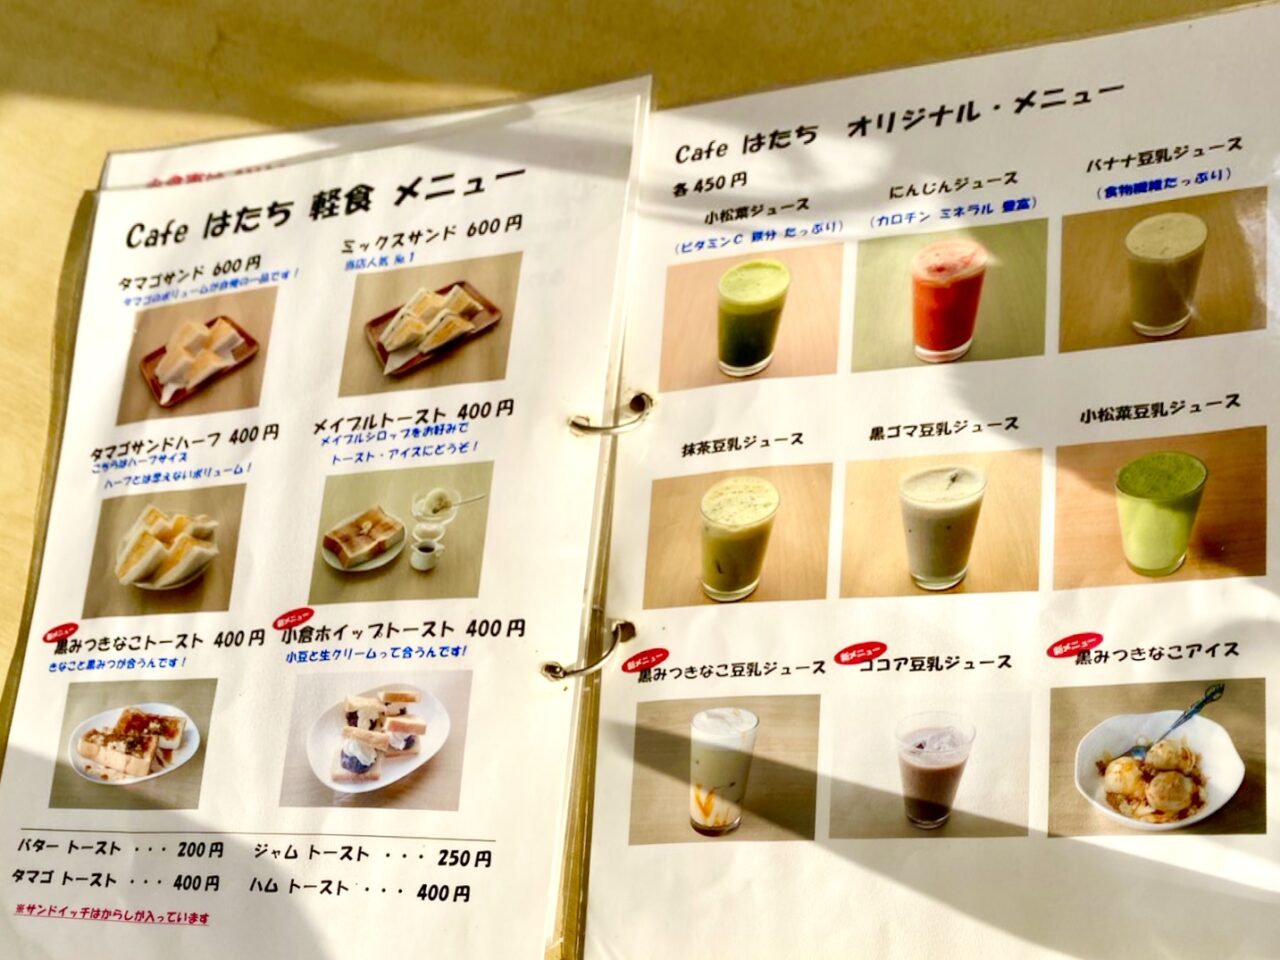 大阪府堺市のららぽーと堺近くのカフェはたちのの軽食メニューとオリジナルメニュー